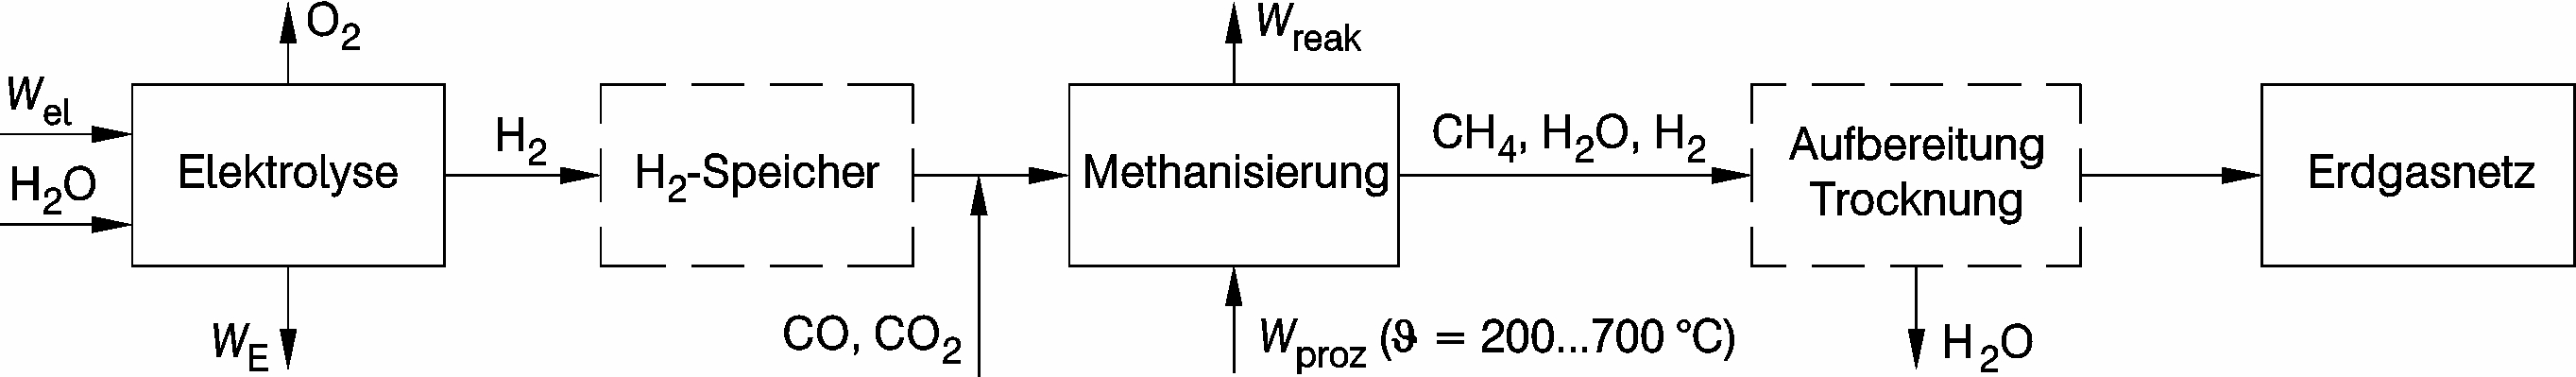 Übersicht der technologischen Reaktionsabläufe bei der Elektrolyse mit nachgeschalteter Methanisierung [1]